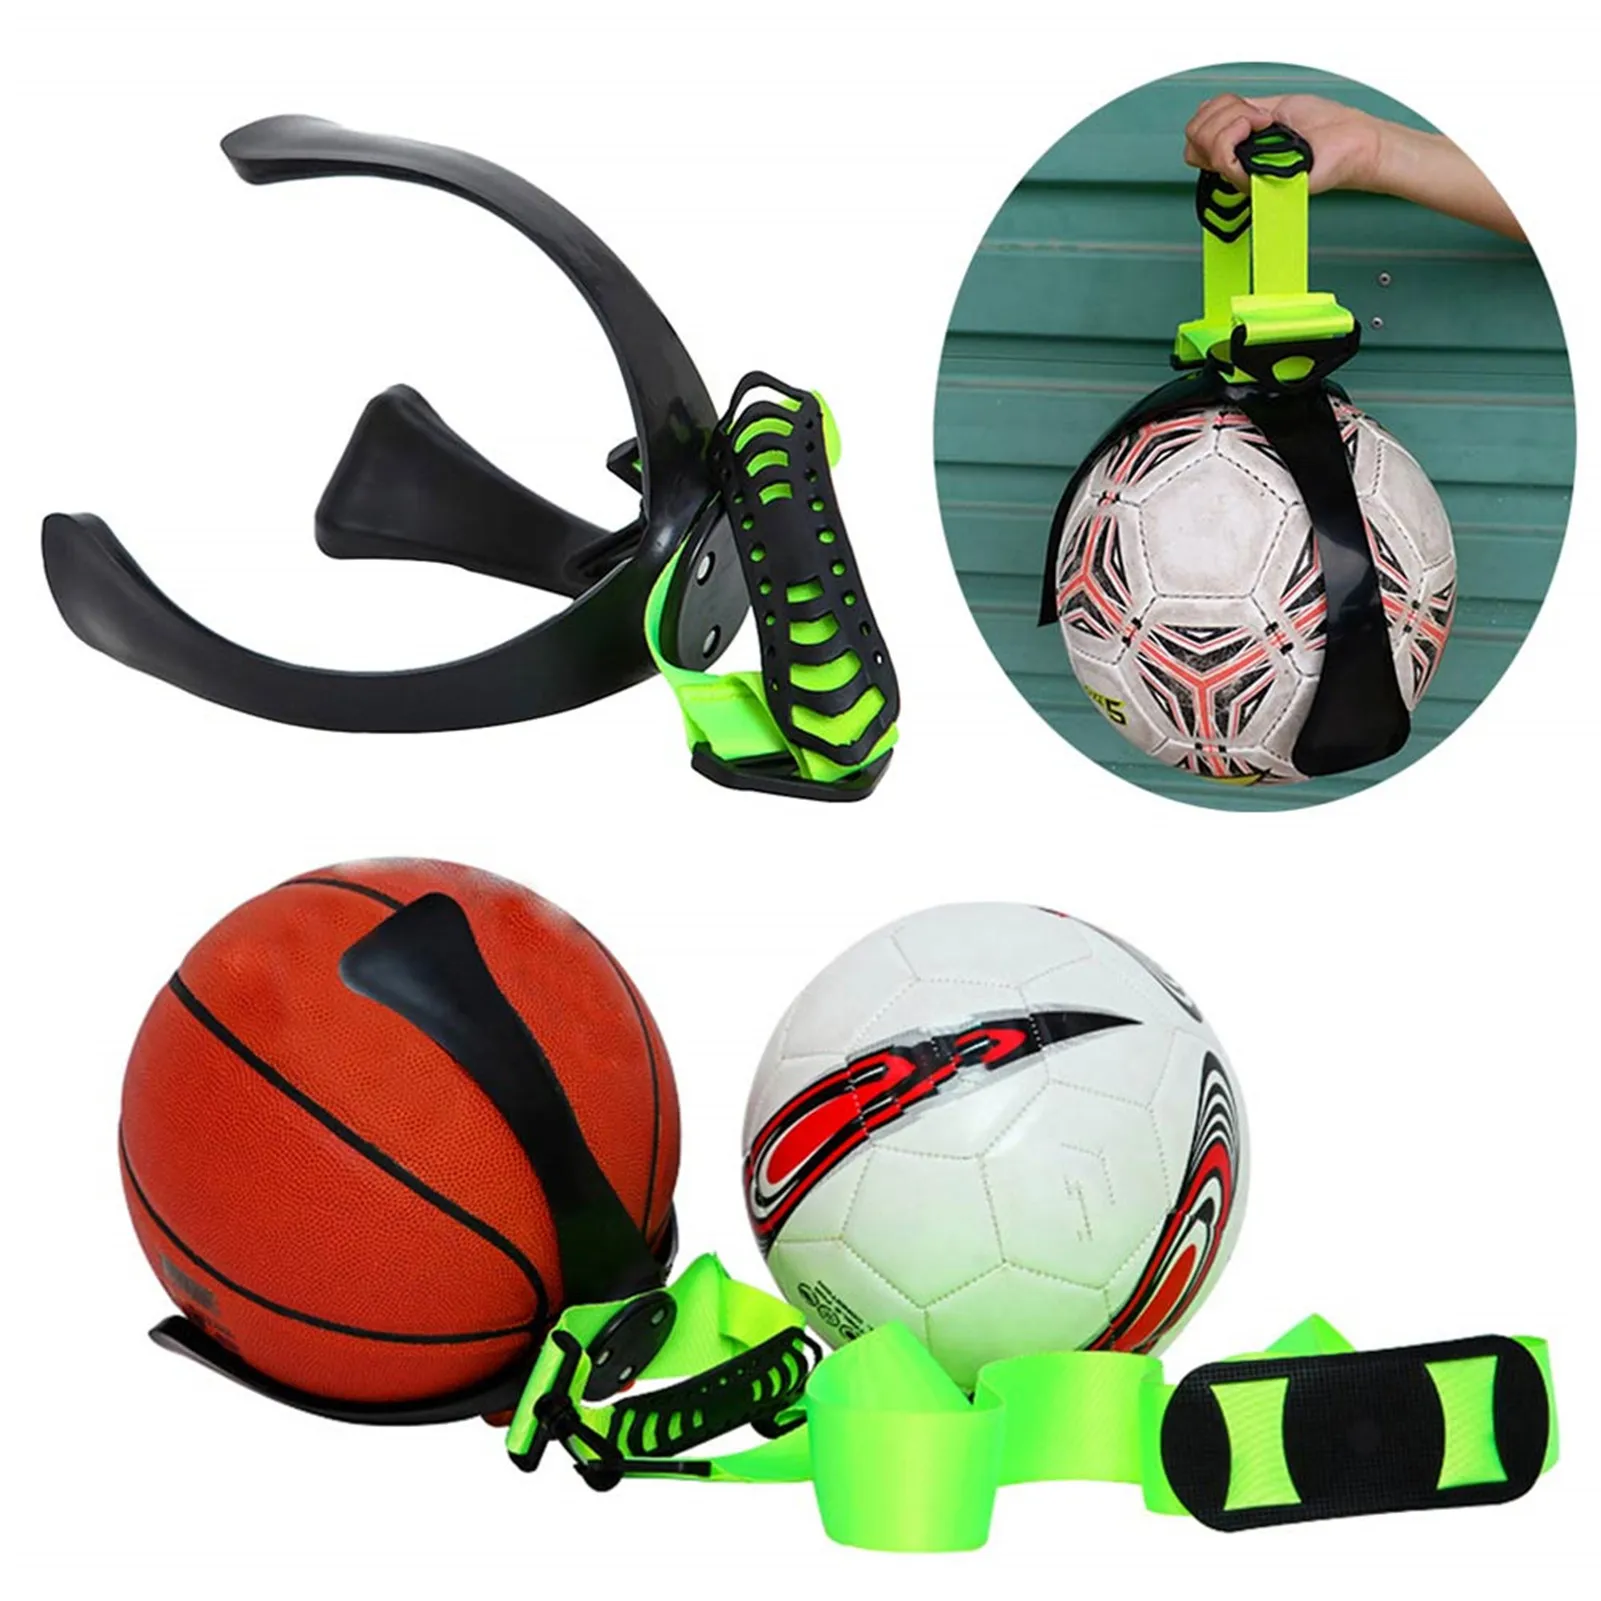 

2020 Новое настенное крепление подставка для баскетбольного мяча Футбол стеллаж для хранения мяч Дисплей кронштейн компактный застегивающи...